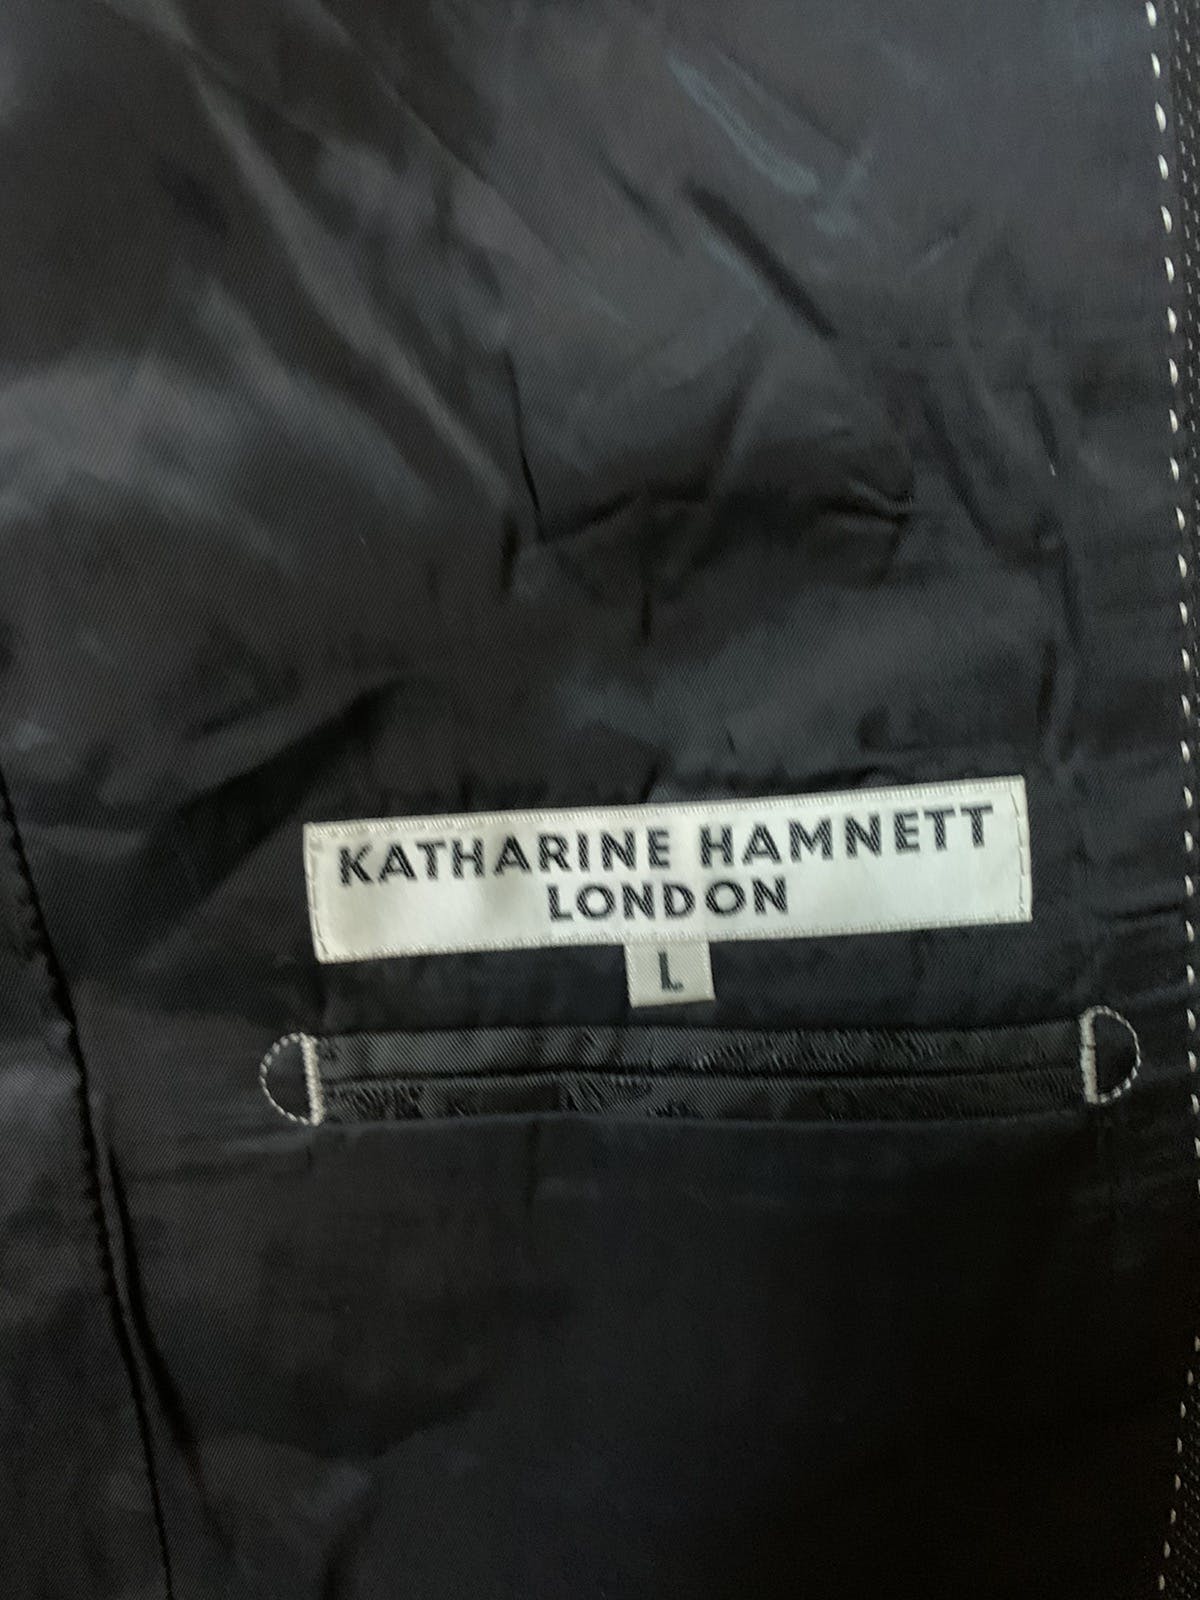 Katharine Hamnett London - katherine Hanmett Coat - 6